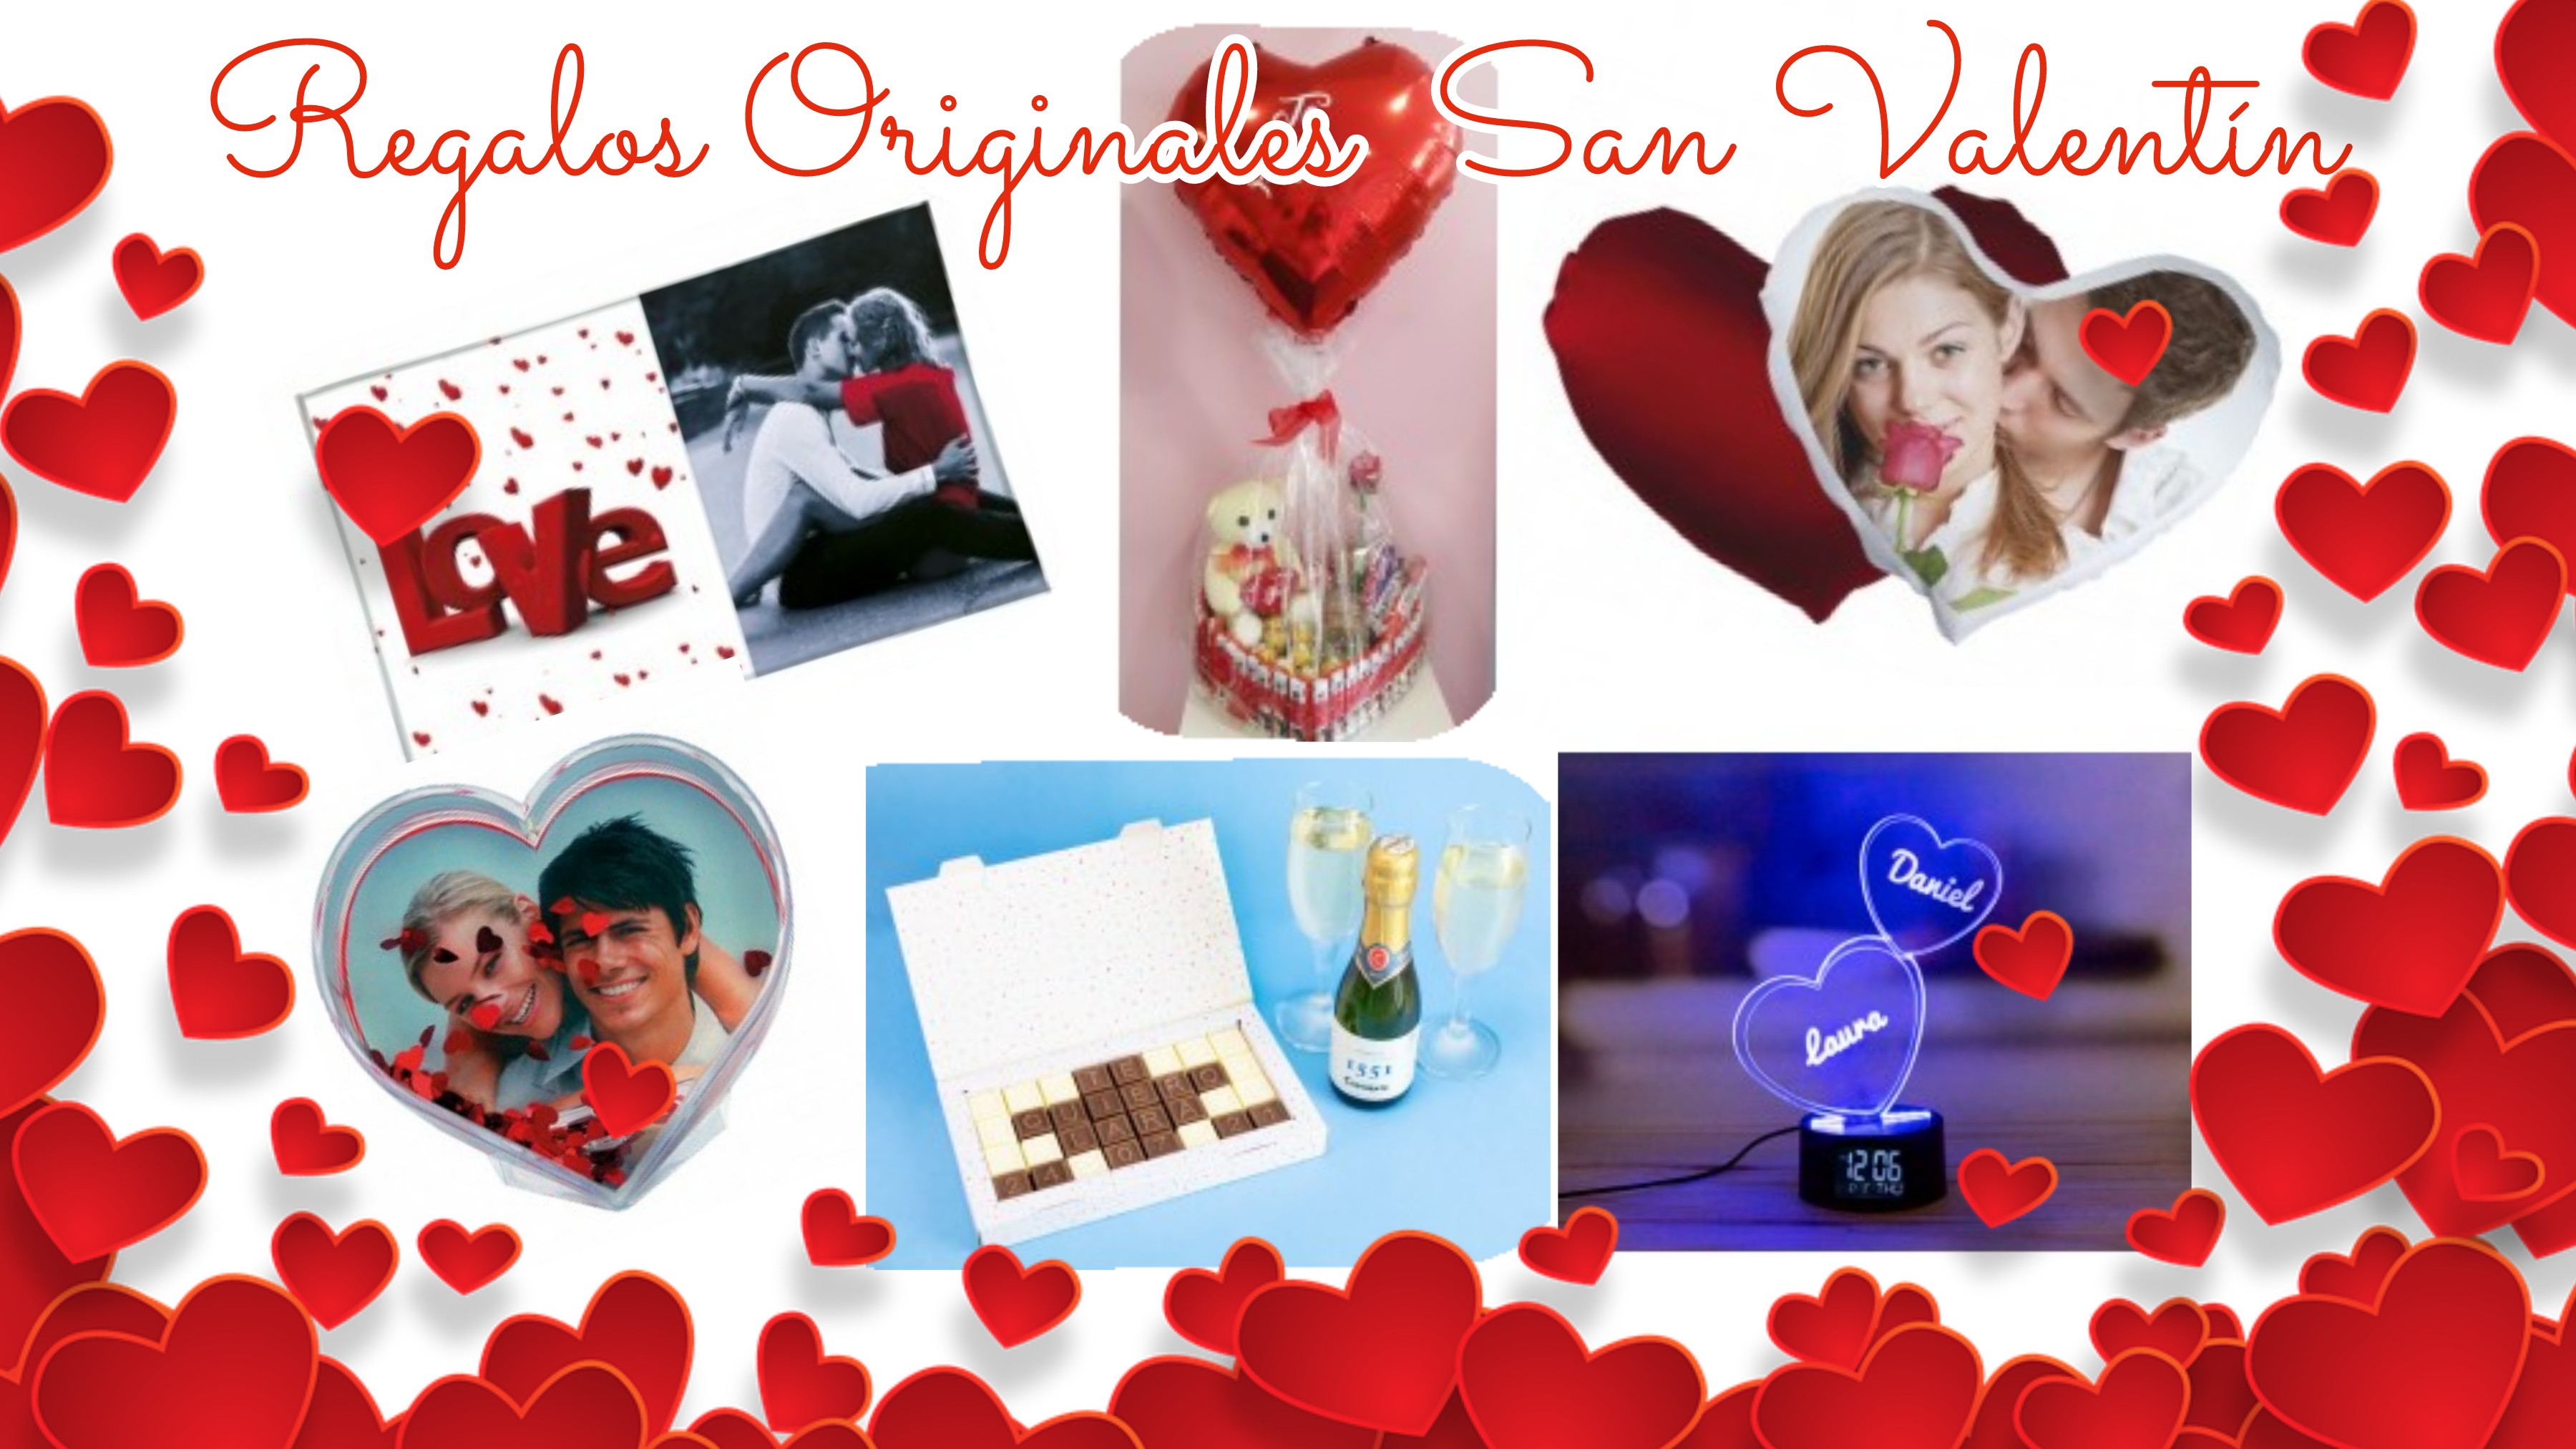 Regalos Personalizados San Valentín, Regalos Originales